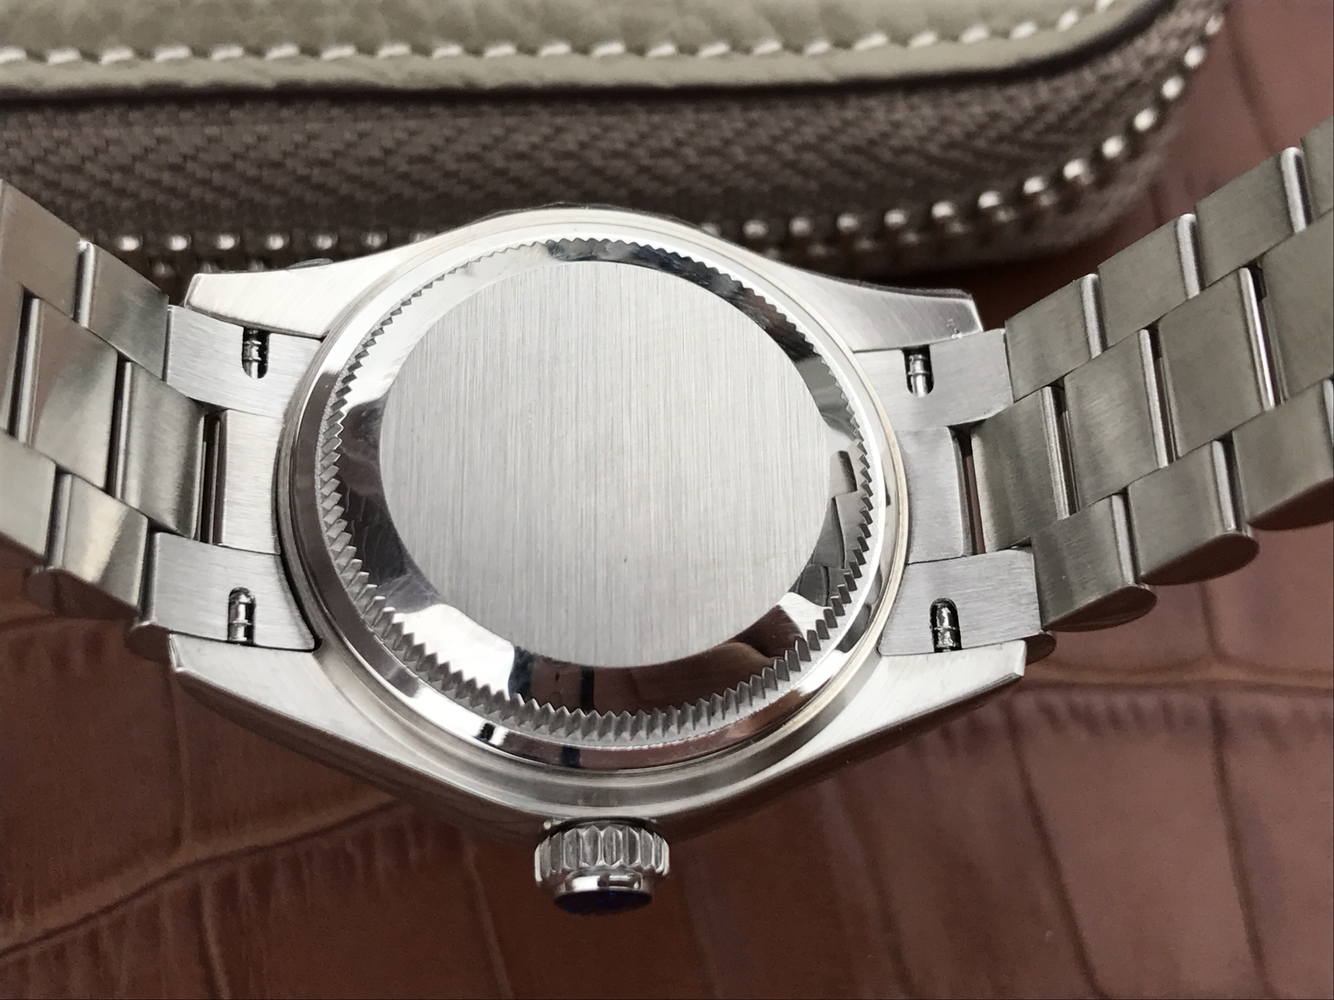 2023050901360534 - 正品刻模勞力士日誌型女錶一比一高仿手錶 28毫米A貨手錶￥3380